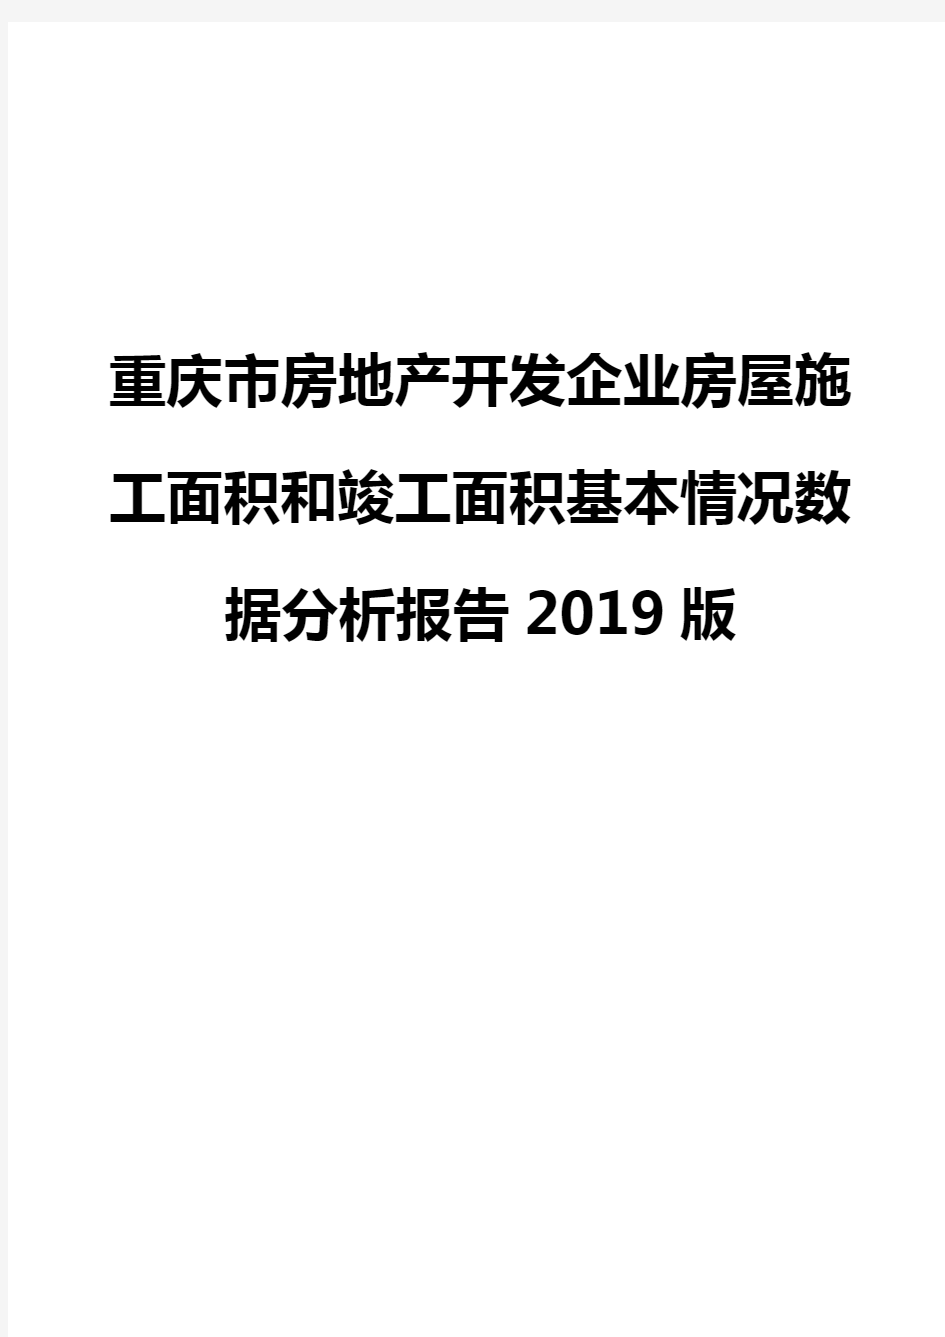 重庆市房地产开发企业房屋施工面积和竣工面积基本情况数据分析报告2019版